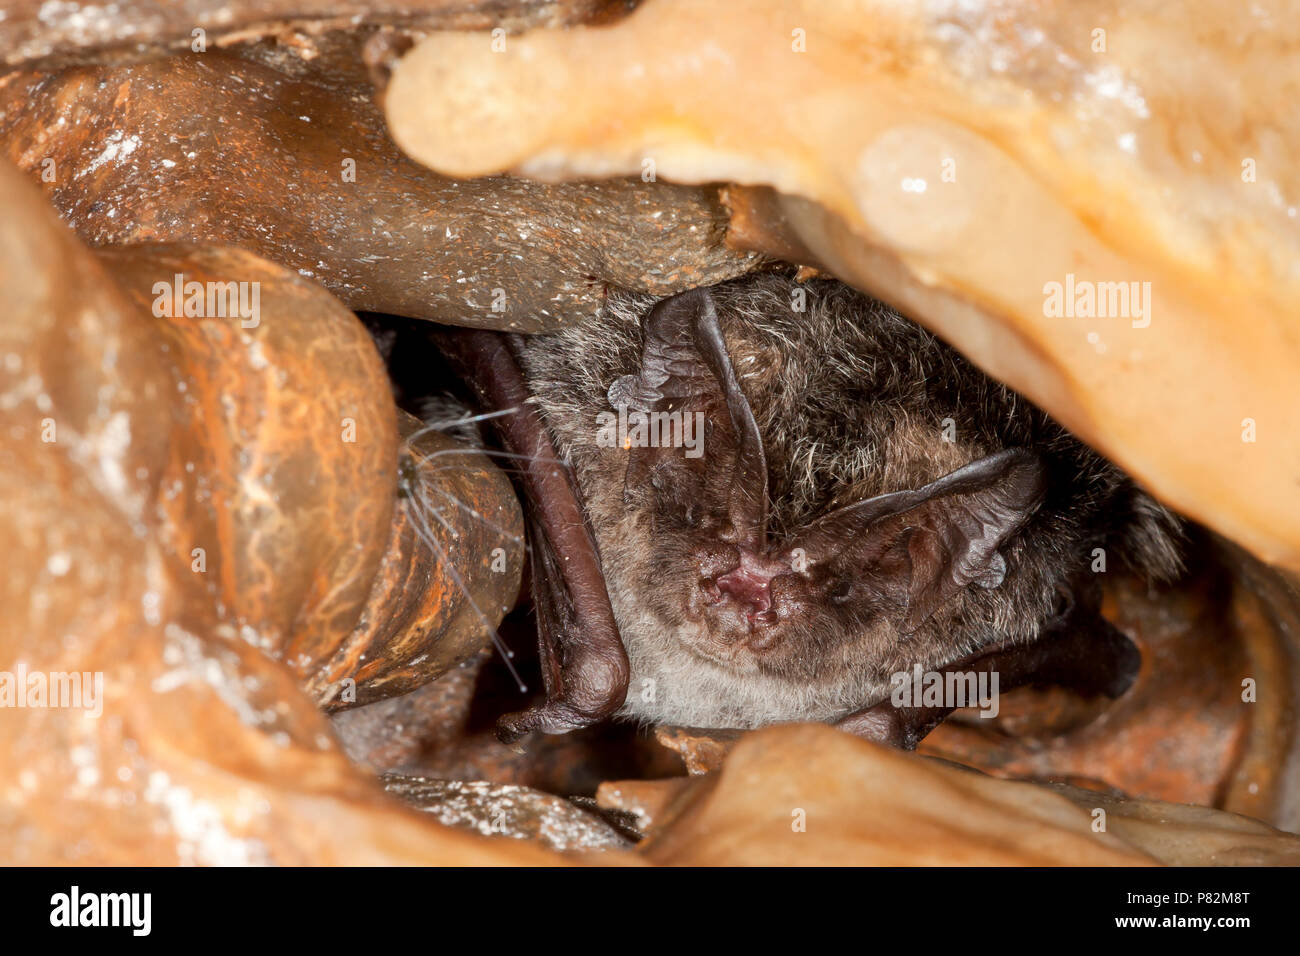 Mopsvleermuis; Barbastelle Bat Stock Photo